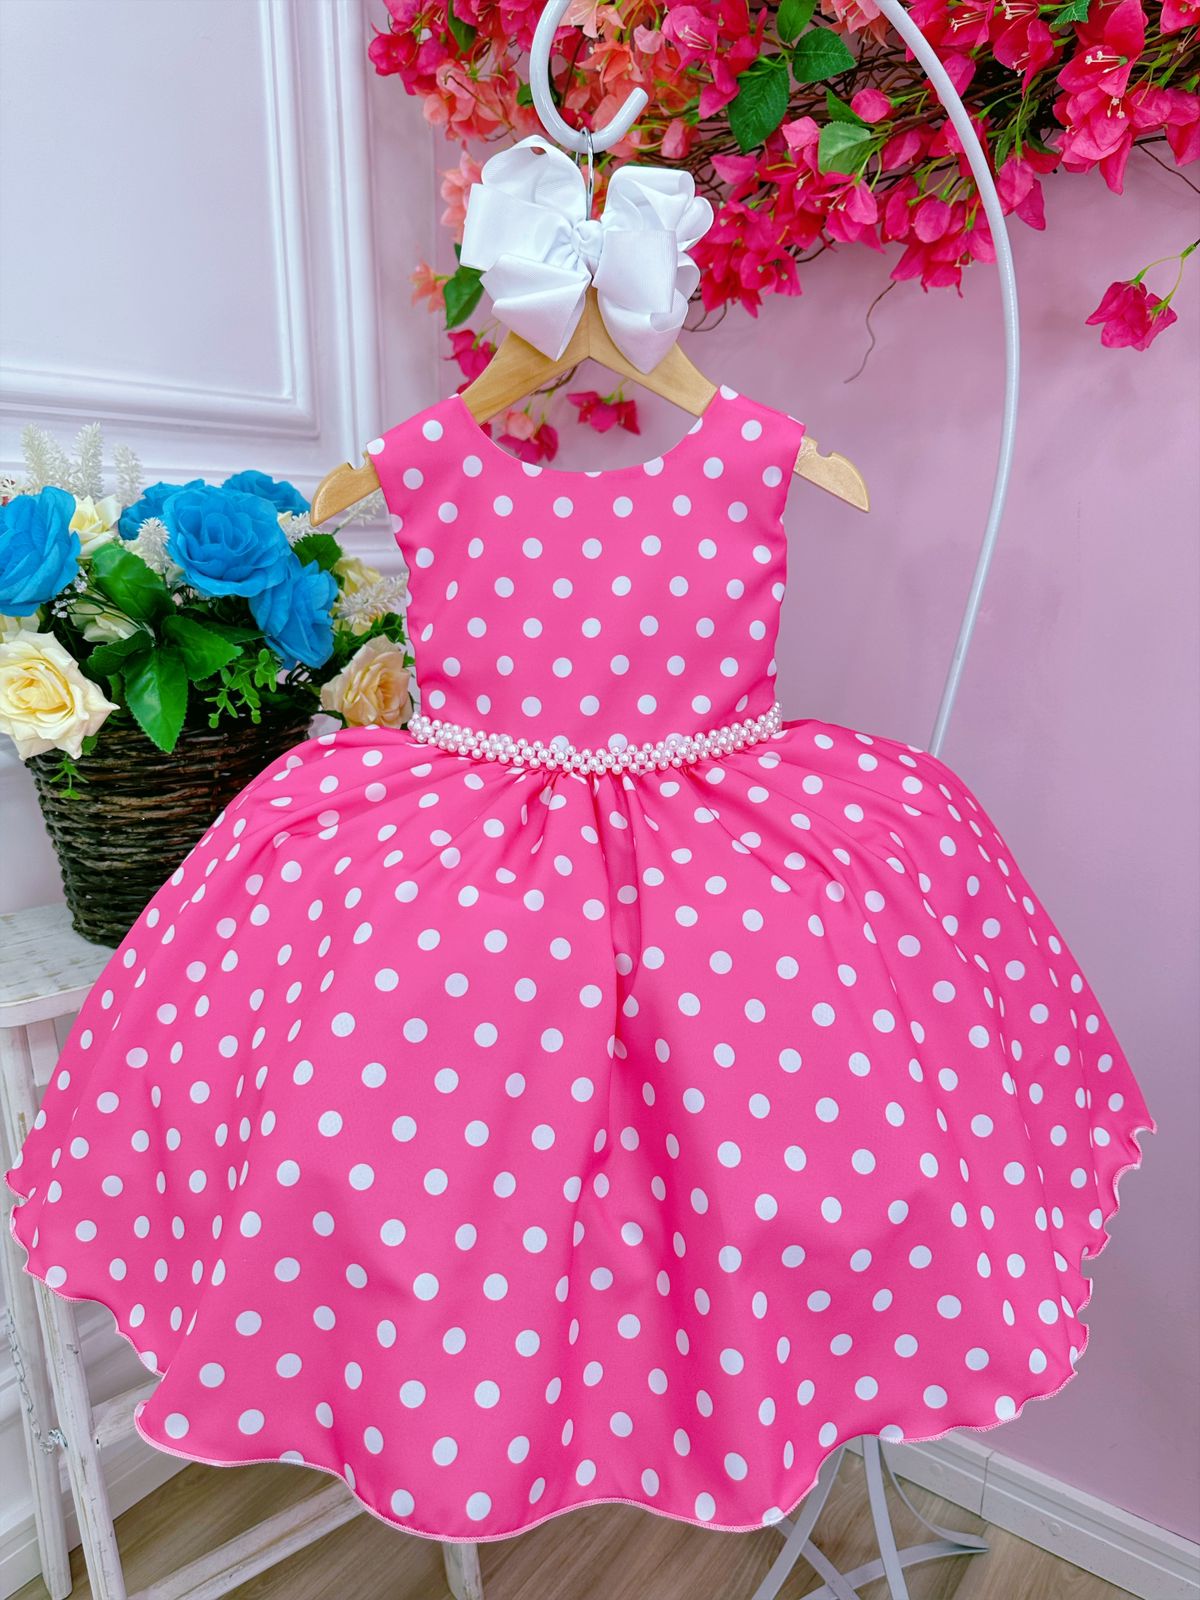 Vestido Infantil Barbie - Vichy Rosa - Little Closet